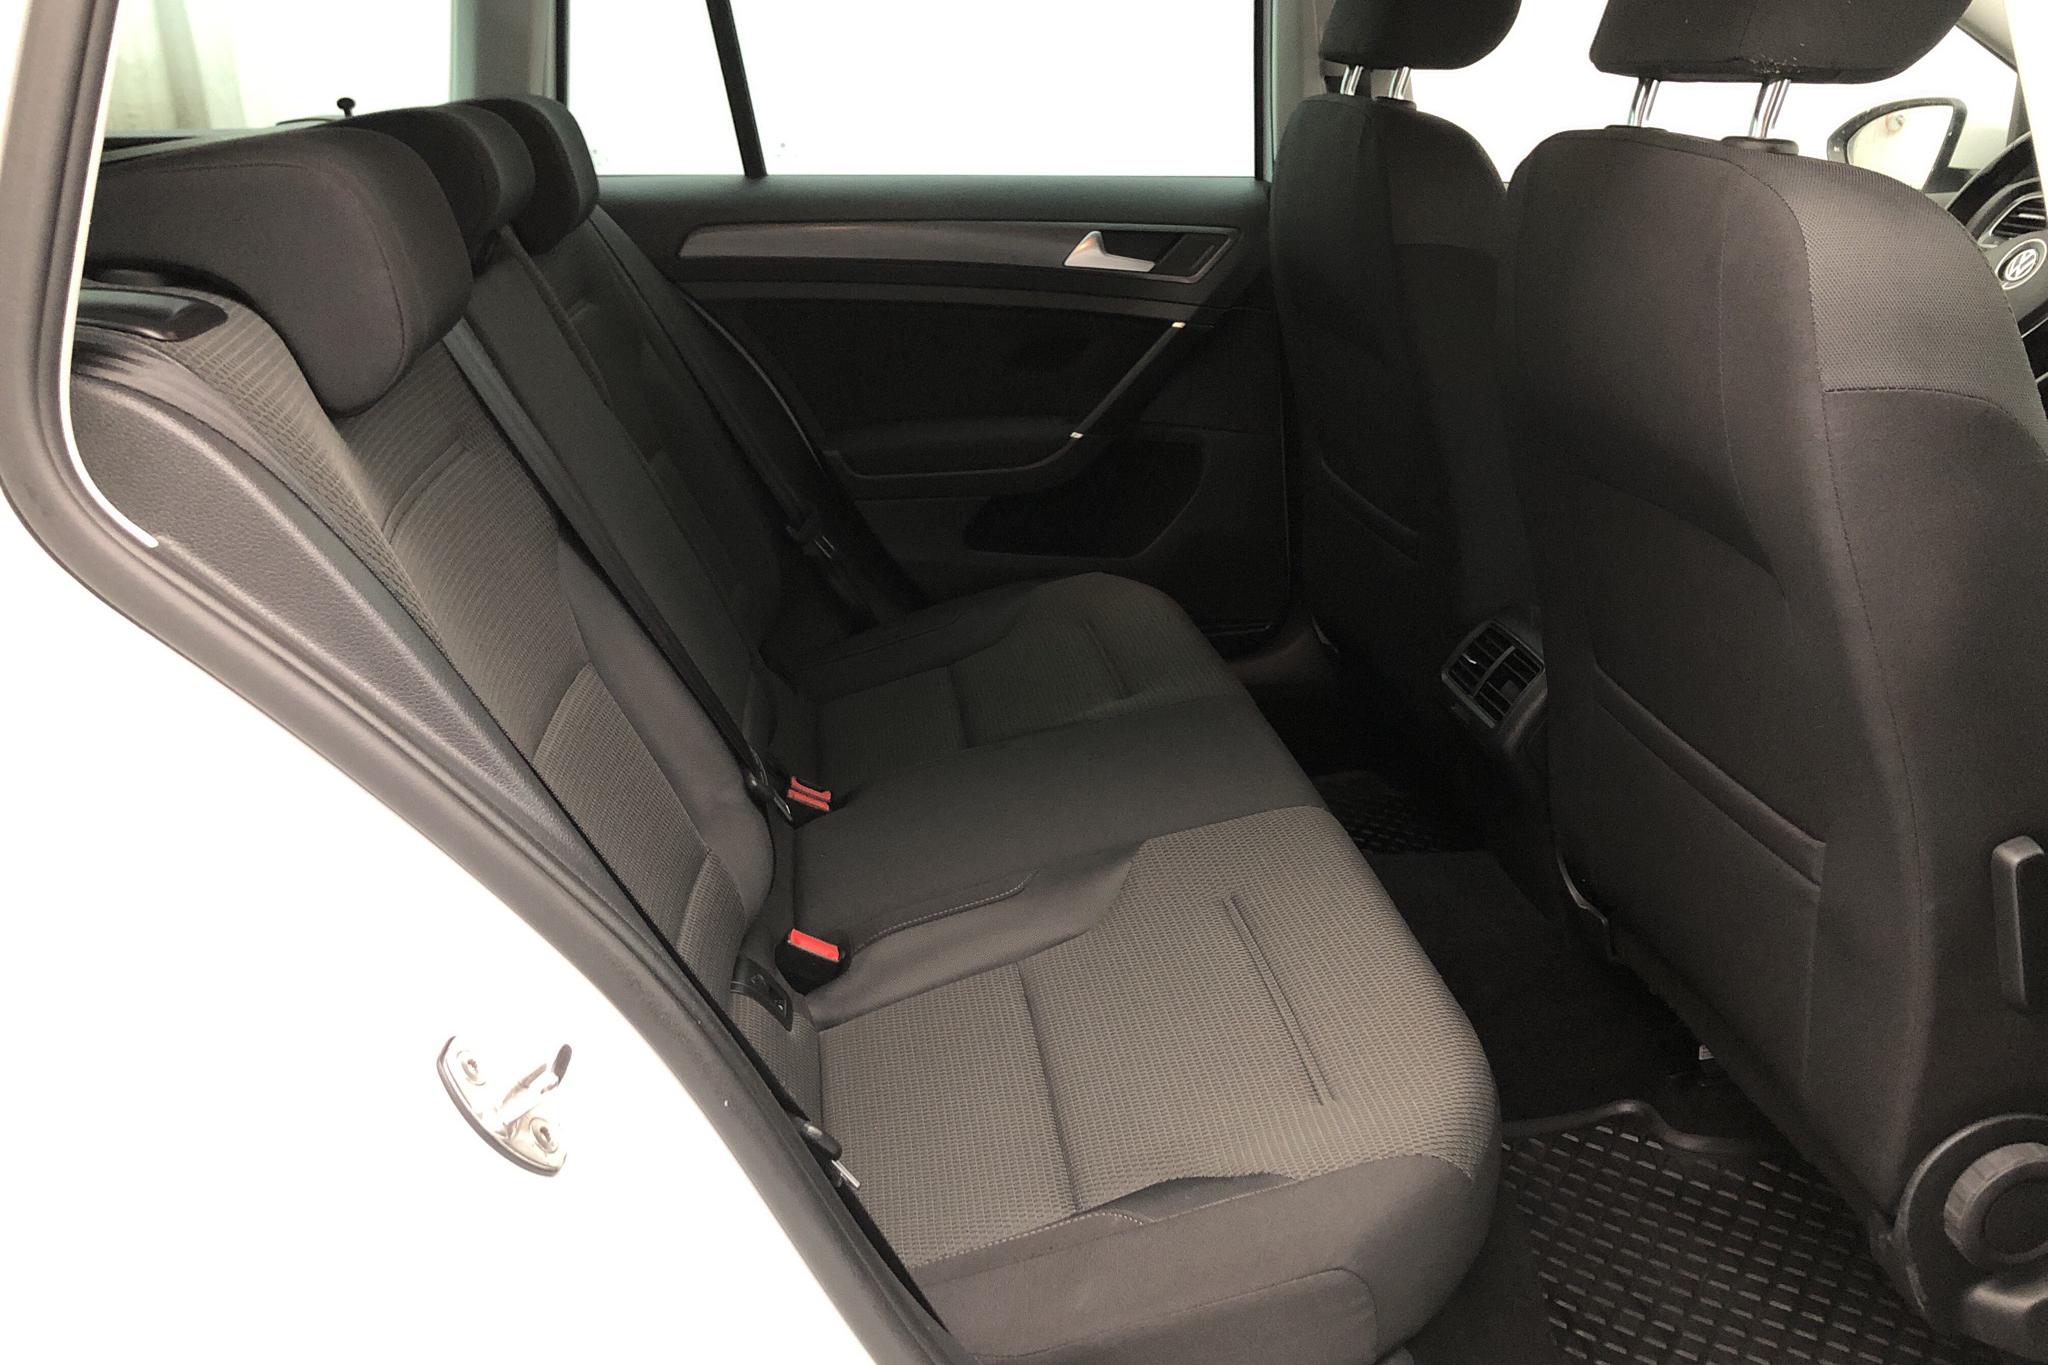 VW Golf VII 1.6 TDI Sportscombi (115hk) - 9 621 mil - Automat - vit - 2019